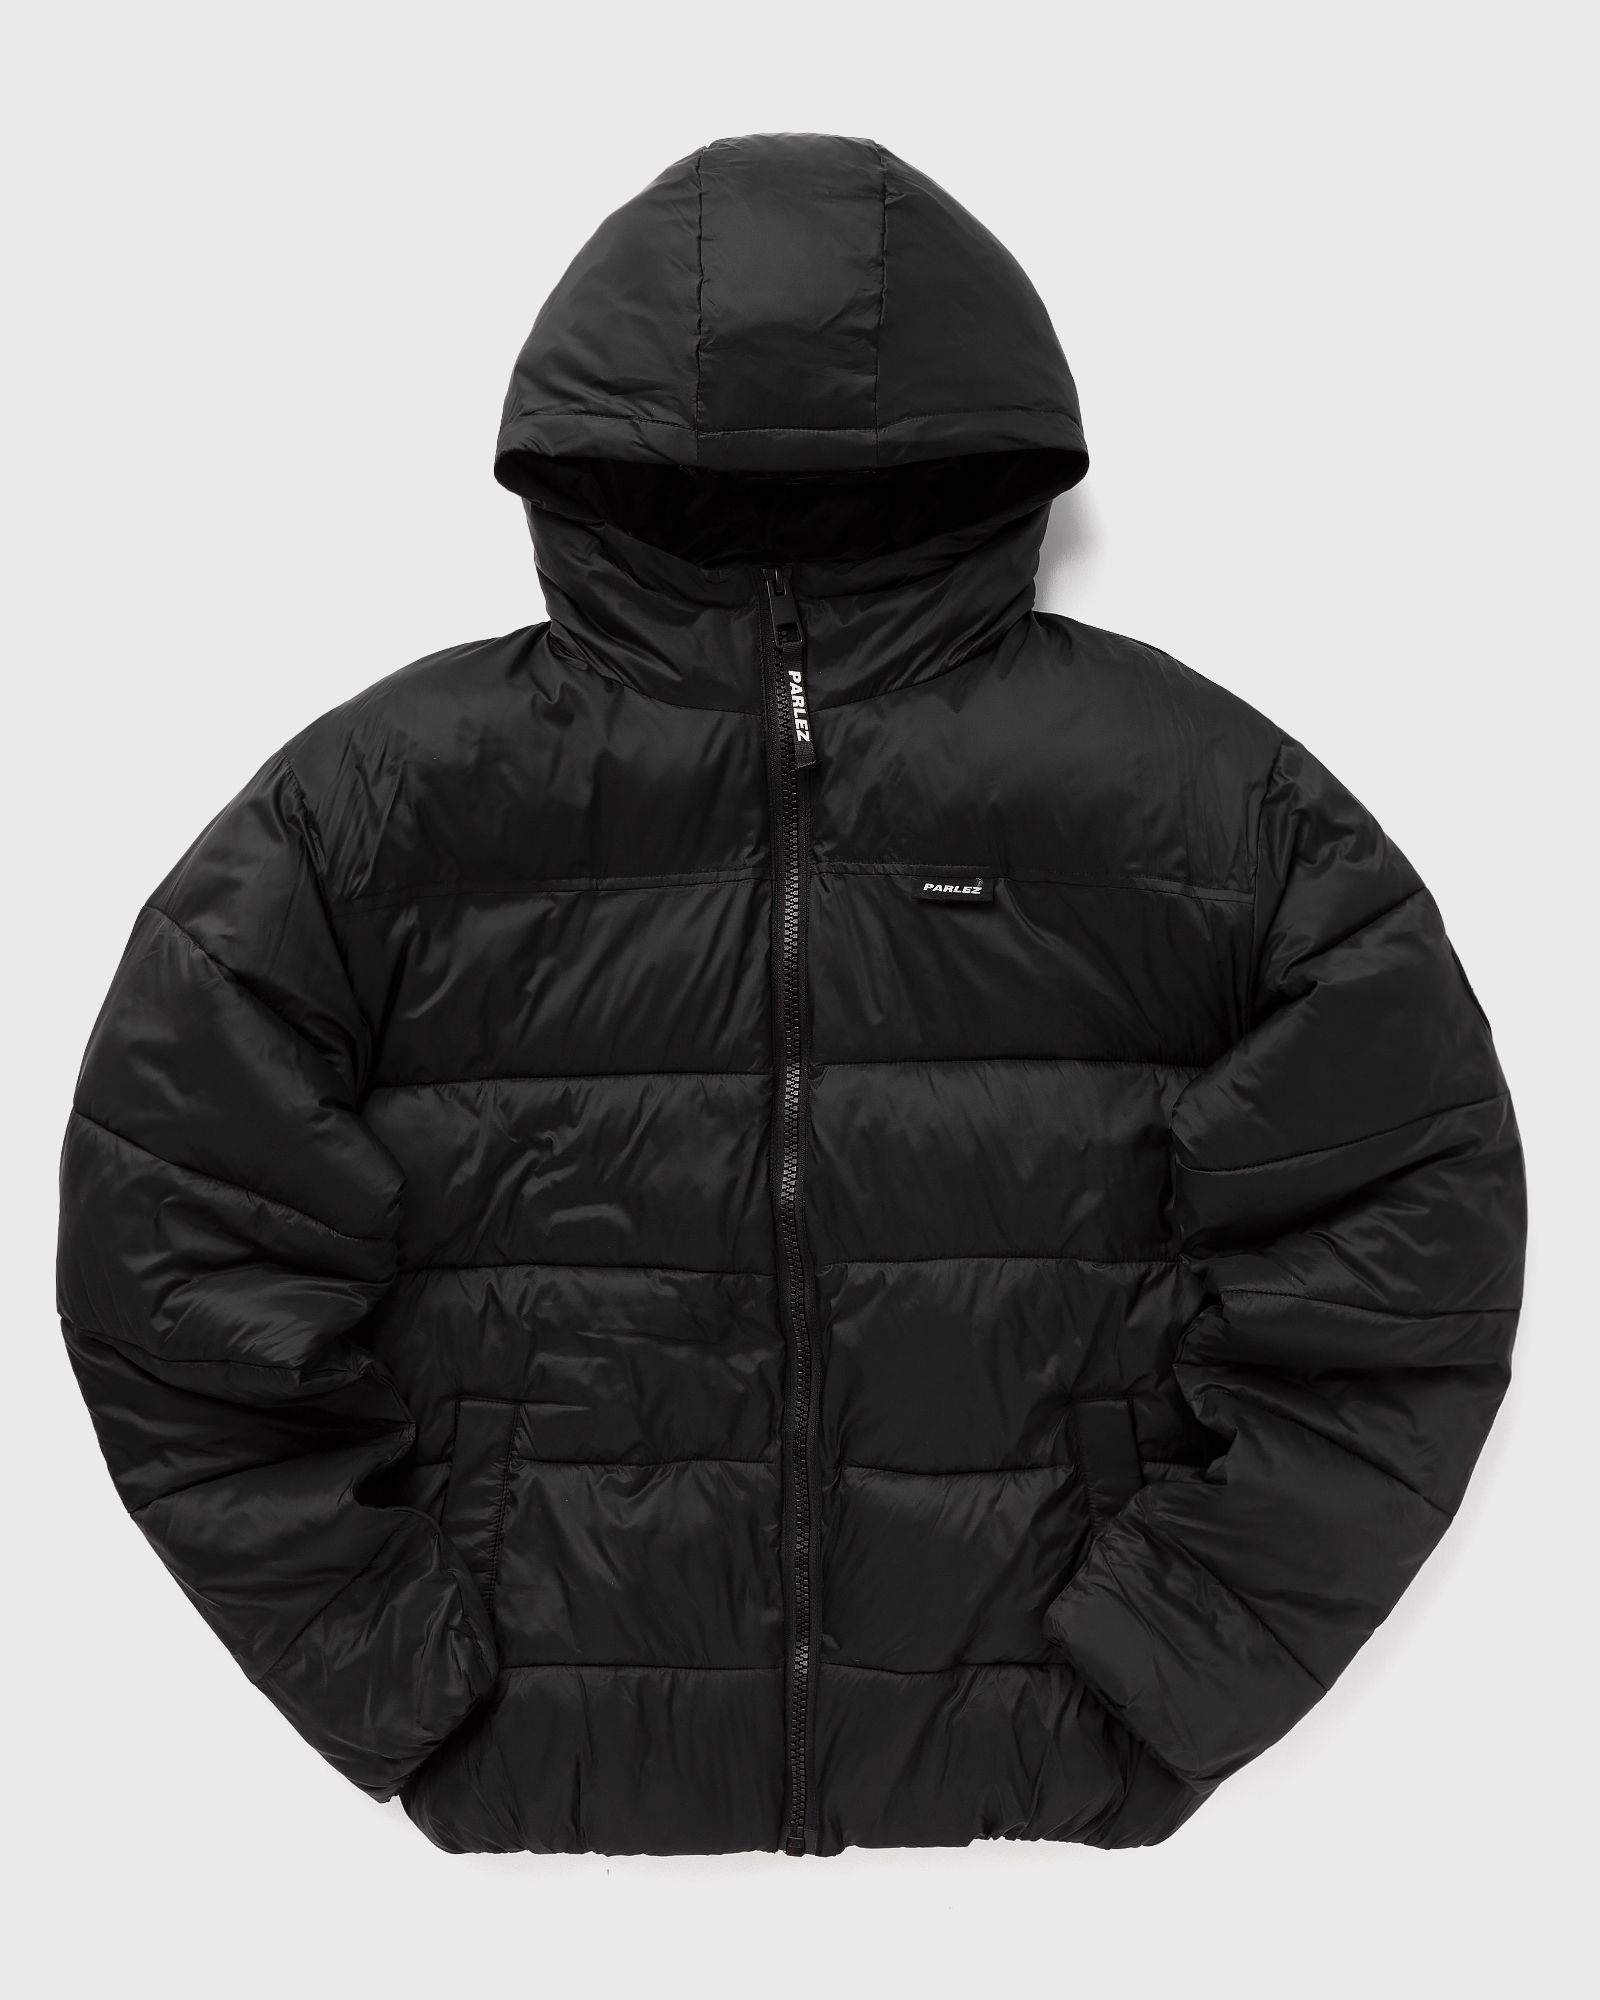 Parlez - caly puffer jacket men down & puffer jackets black in größe:xl